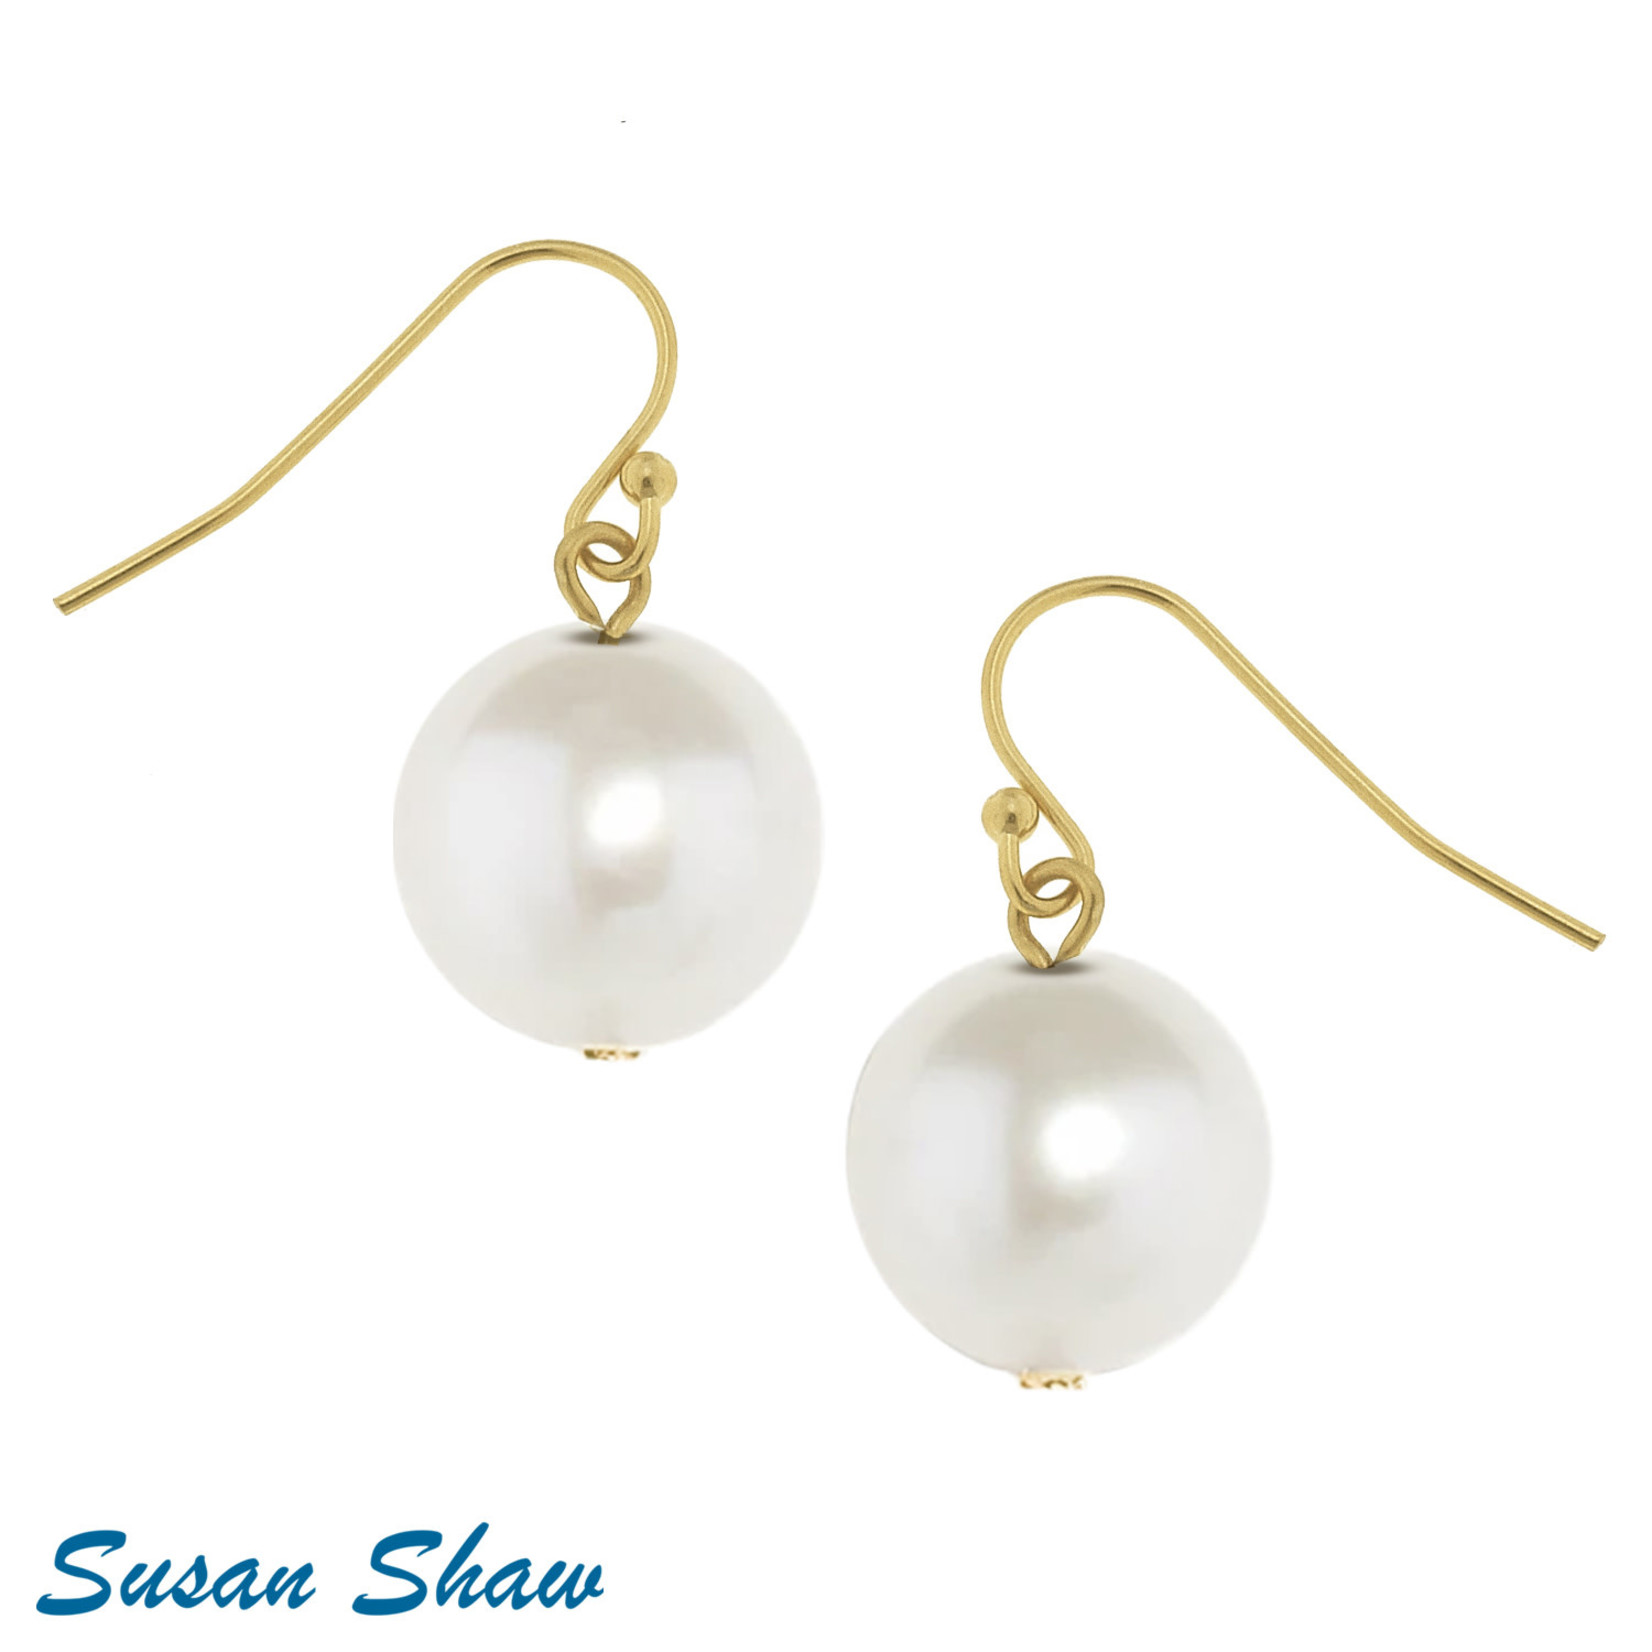 Susan Shaw Susan Shaw Shell Pearl Drop Earrings